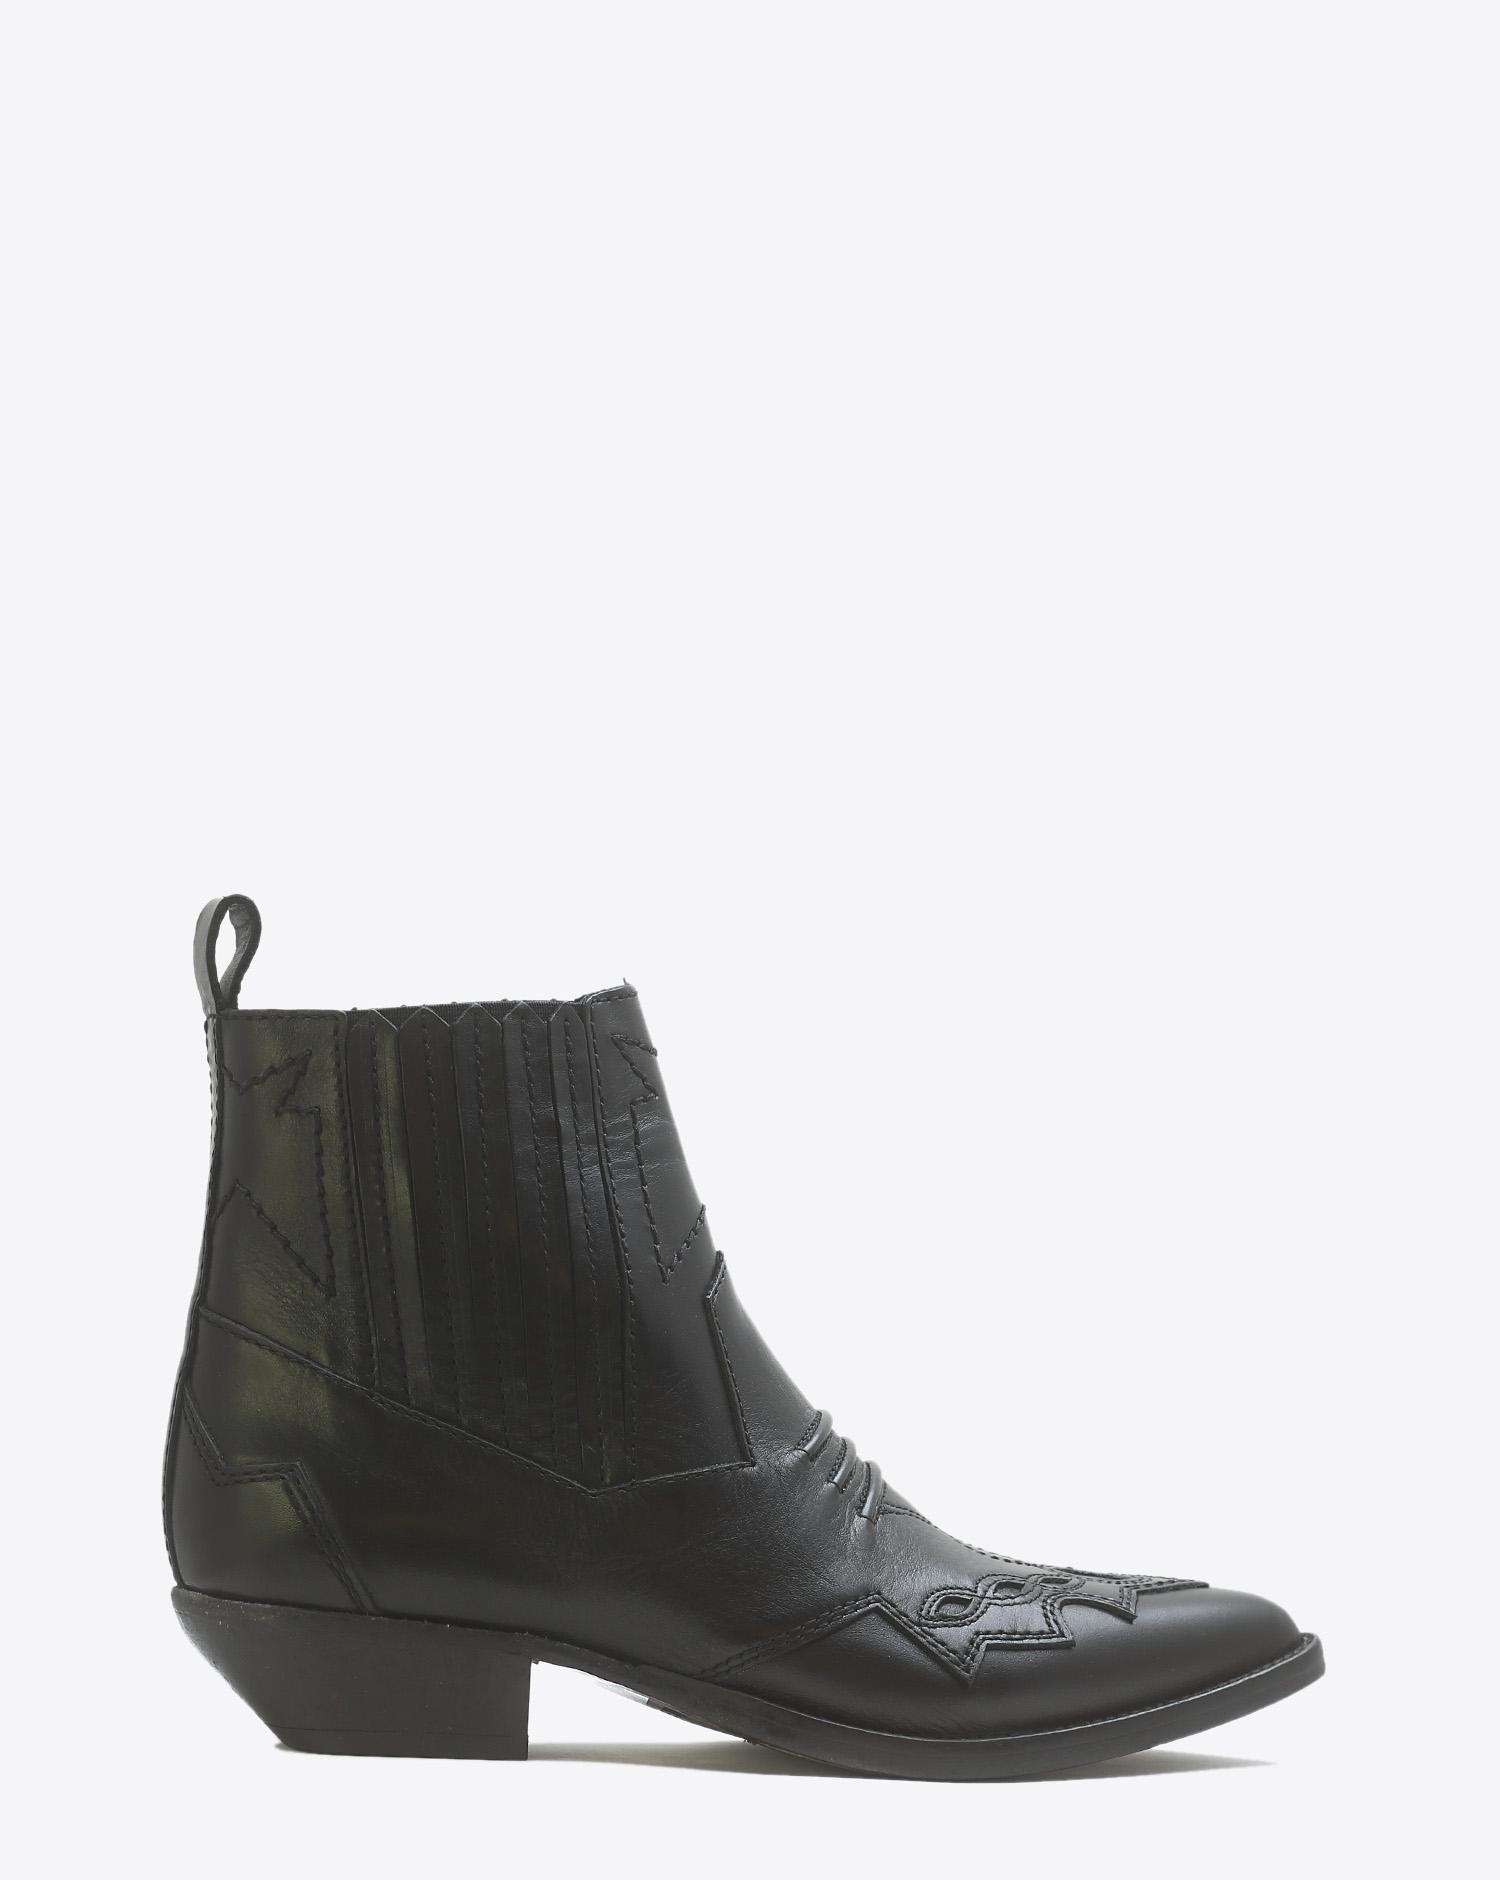 Roseanna Chaussures Boots Santiags TUCSON - Noir cuir  